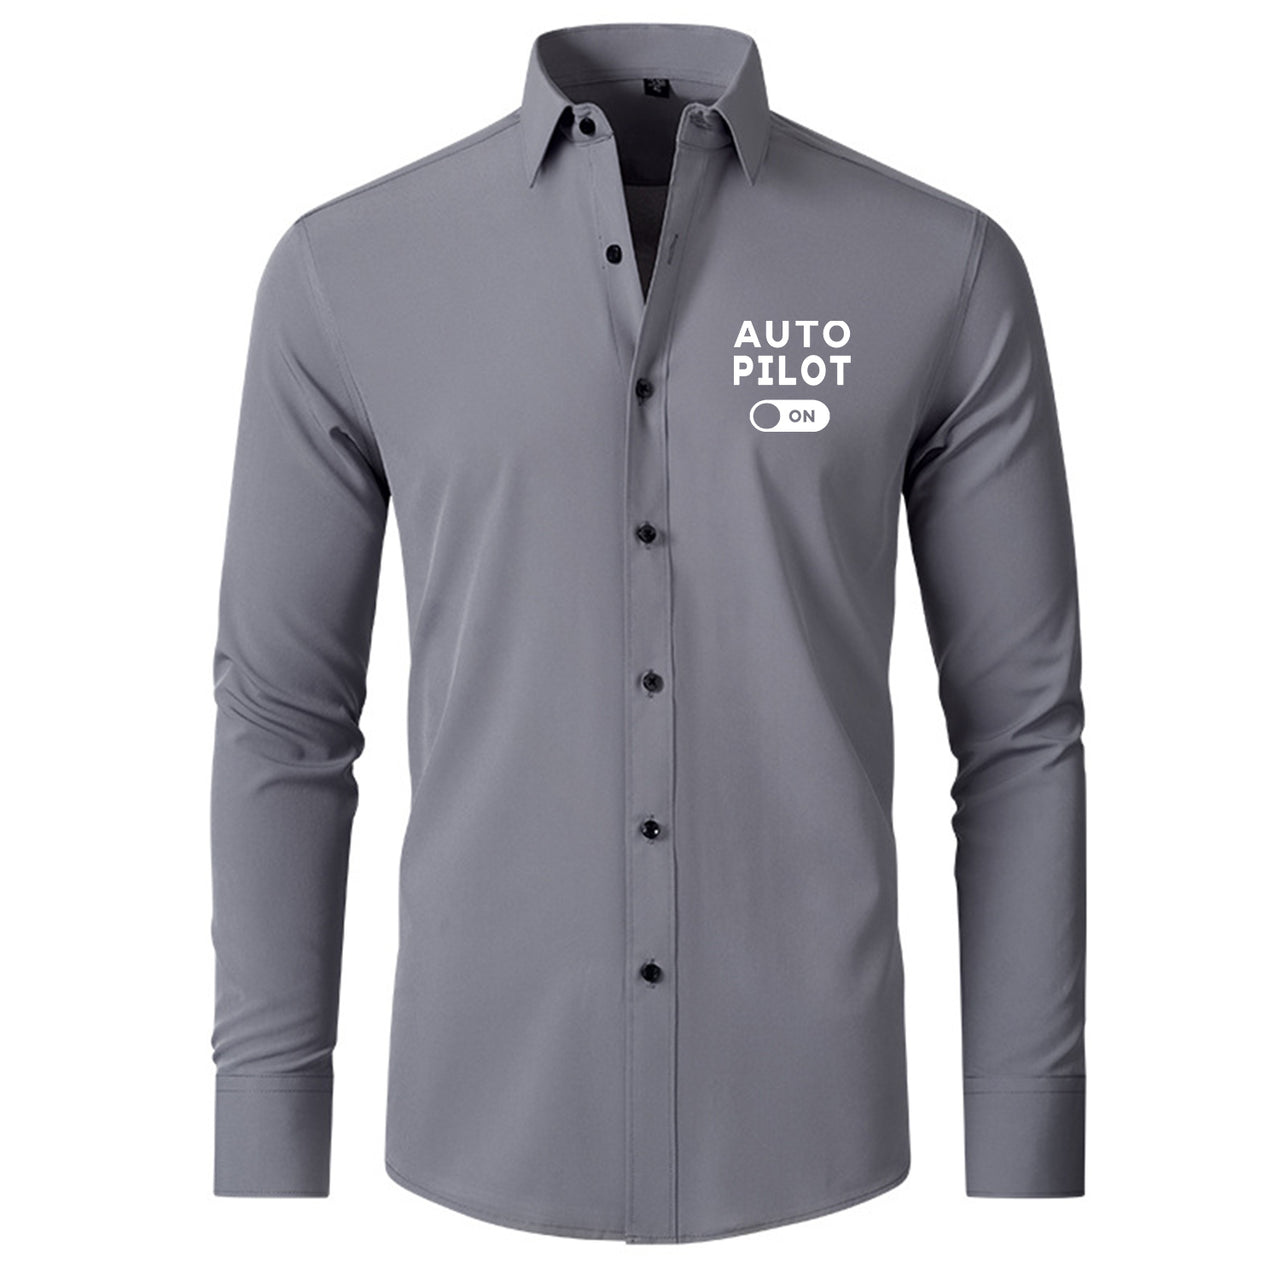 Auto Pilot ON Designed Long Sleeve Shirts